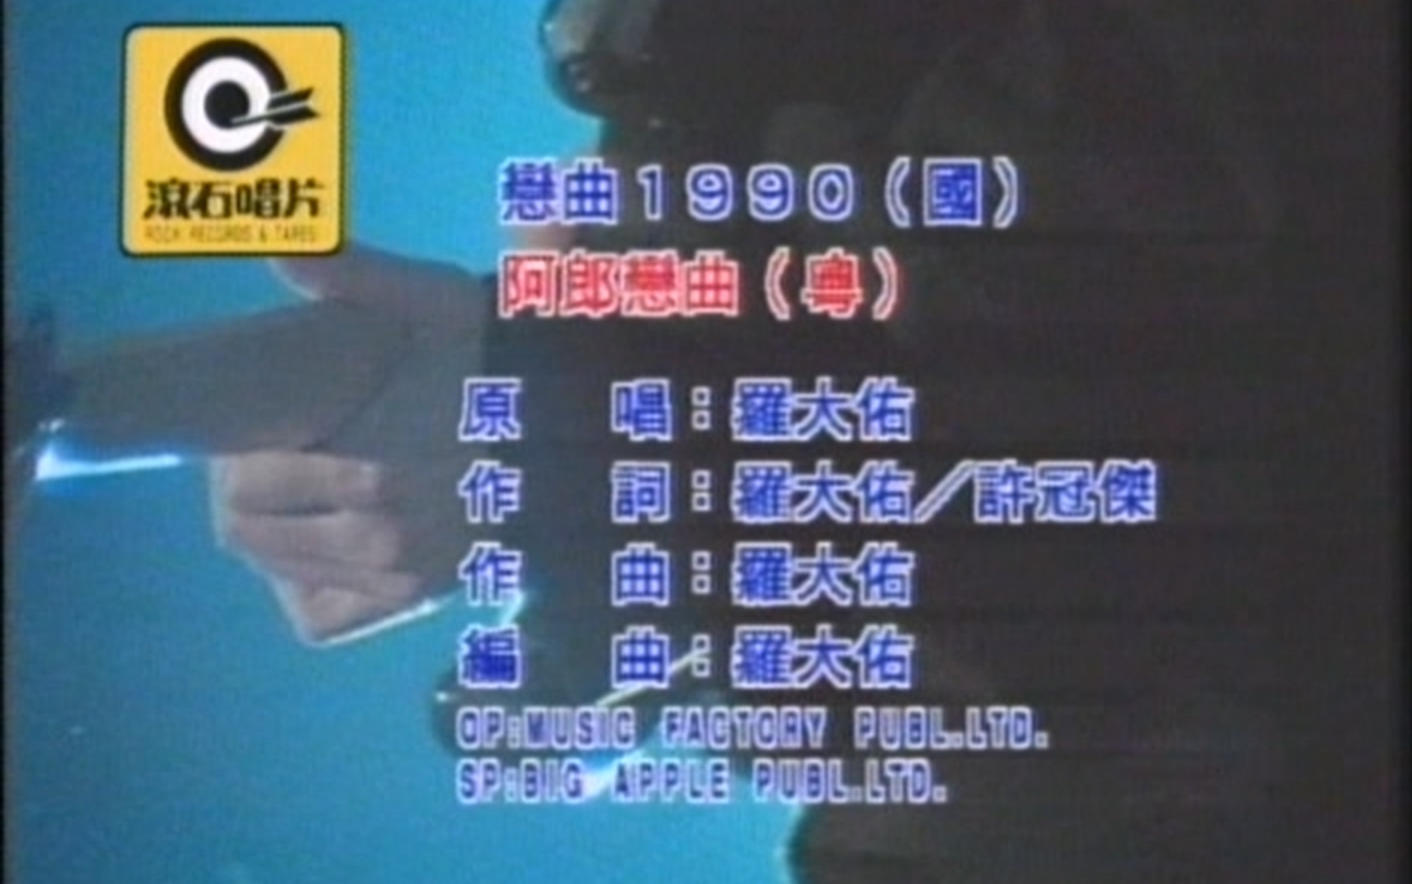 罗大佑 - 恋曲1990【原唱+卡拉OK 伴奏】